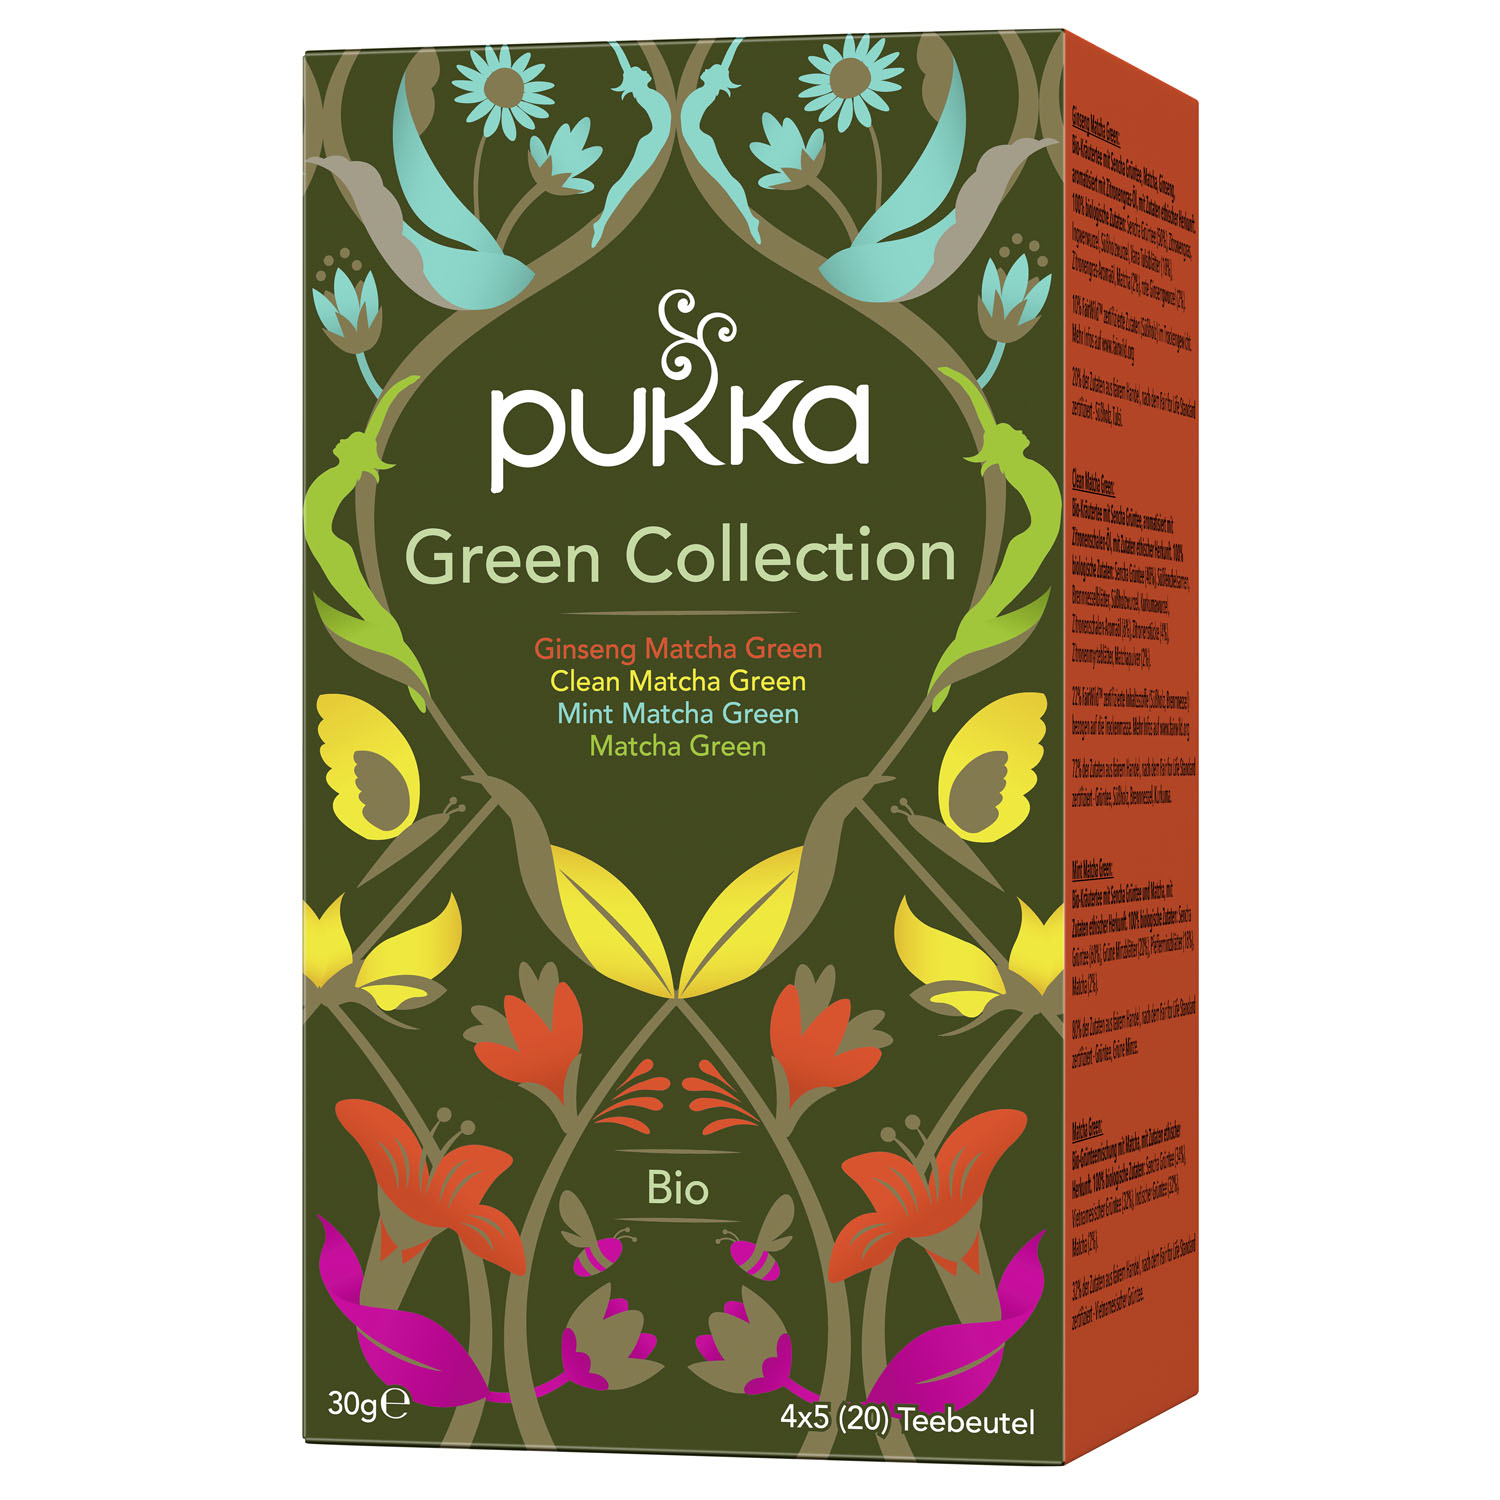 PUKKA Herbs Green Collection ajurvédás organikus zöld tea kollekció 20 teafilter